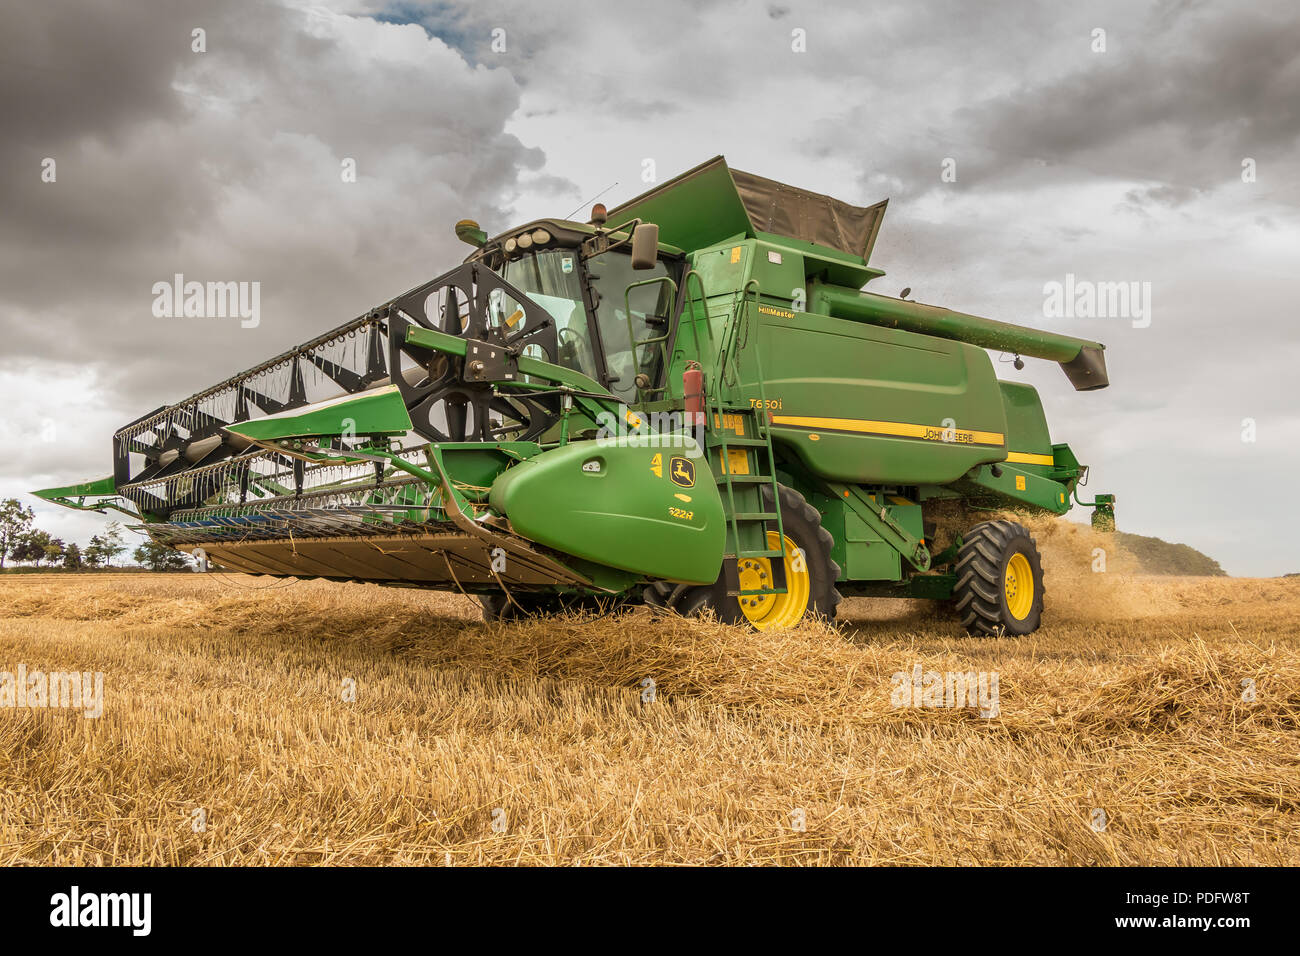 L'agriculture britannique, un John Deere moissonneuse-batteuse Hillmaster travaille sur une récolte de blé, Août 2018 Banque D'Images